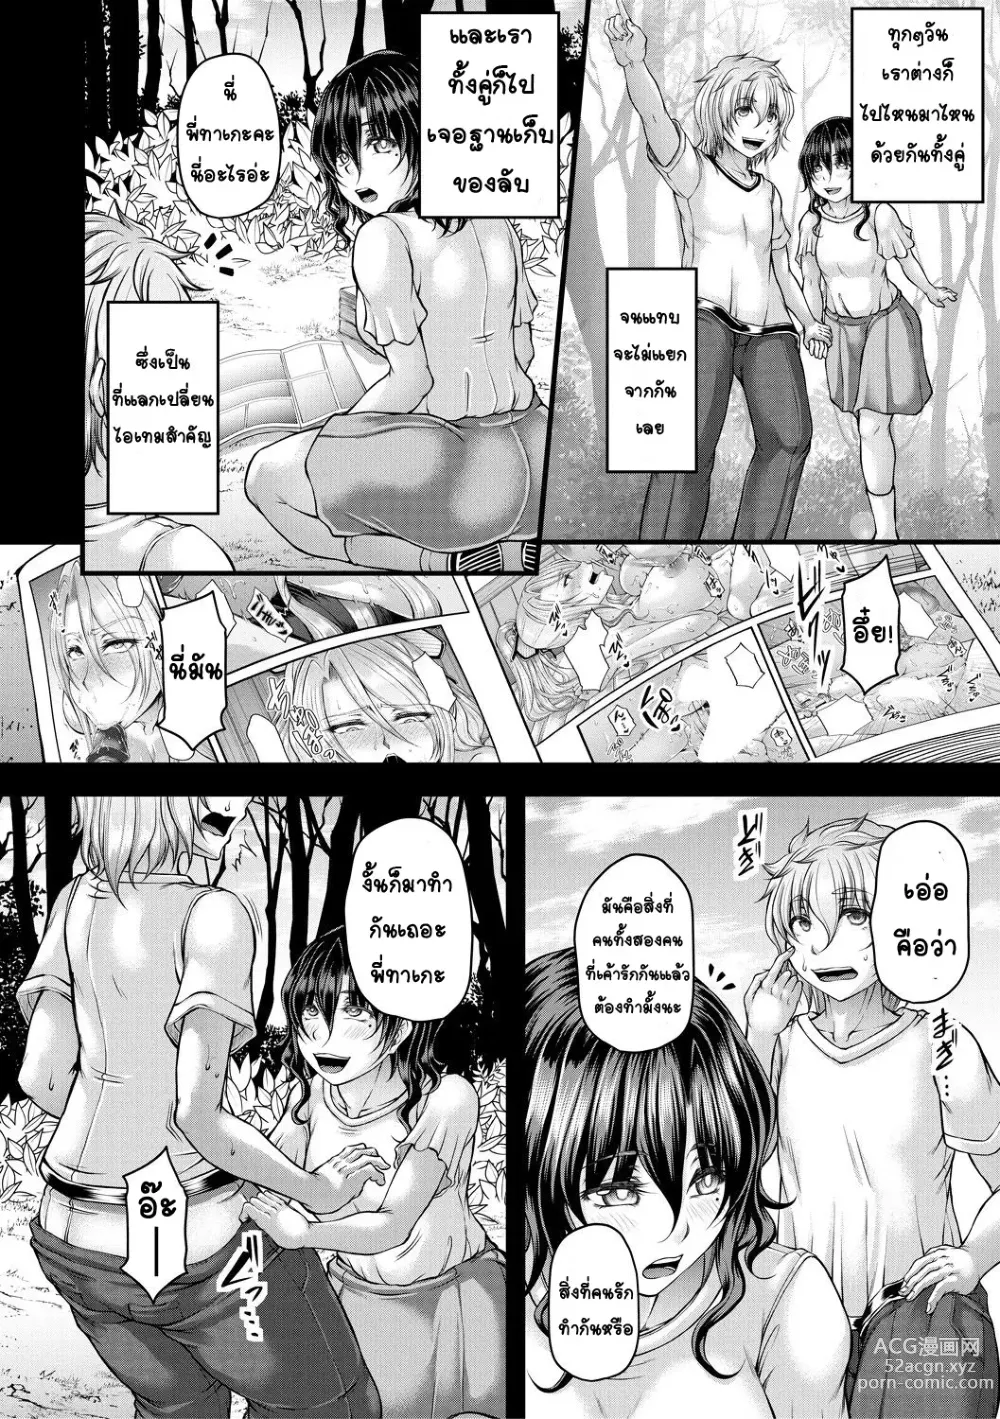 Page 4 of manga kakitsubata Kanae yoru onna ryushi wa han me rarenai 1